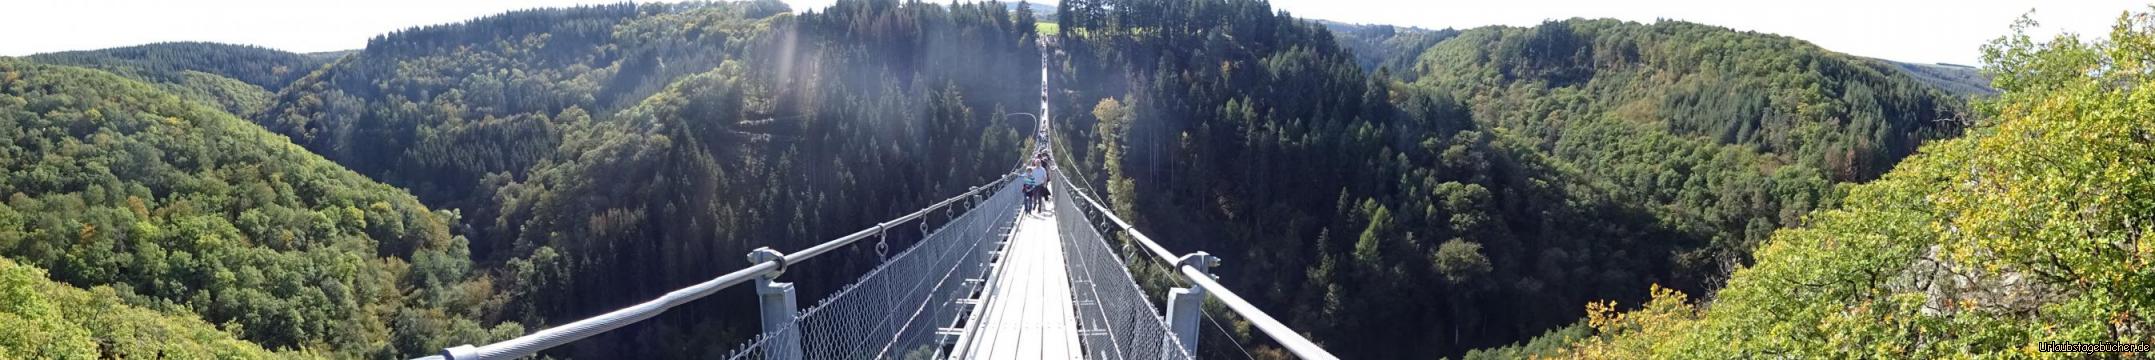 Tolle Rundumsicht von der Hängebrücke Geierlay: Tolle Rundumsicht von der Hängebrücke Geierlay